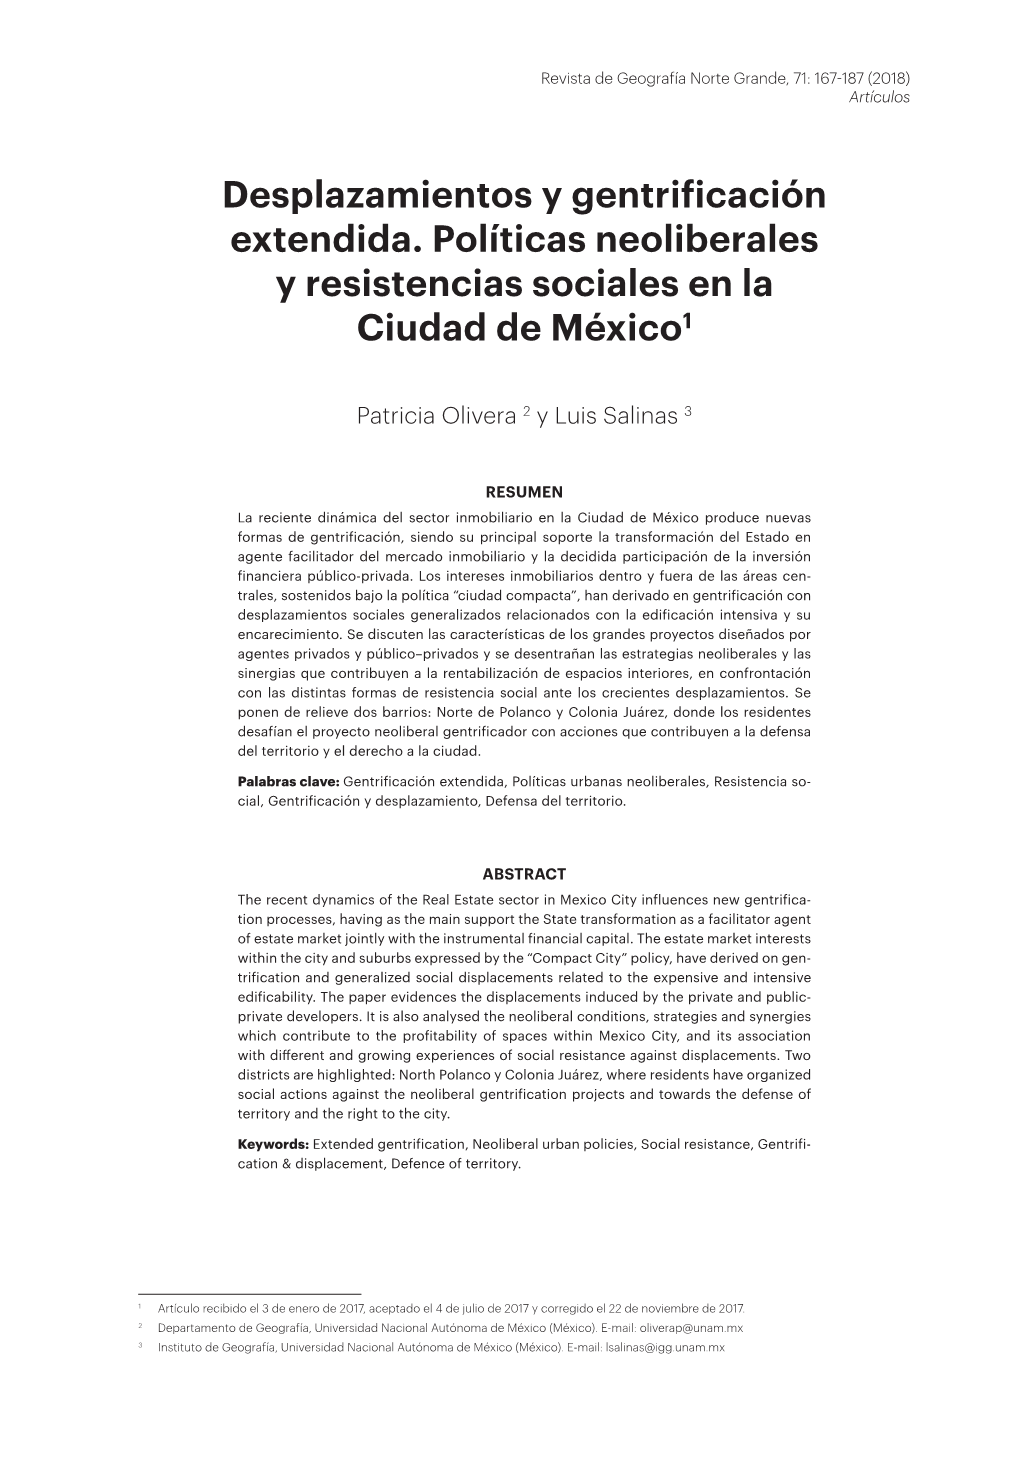 Desplazamientos Y Gentrificación Extendida. Políticas Neoliberales Y Resistencias Sociales En La Ciudad De México1